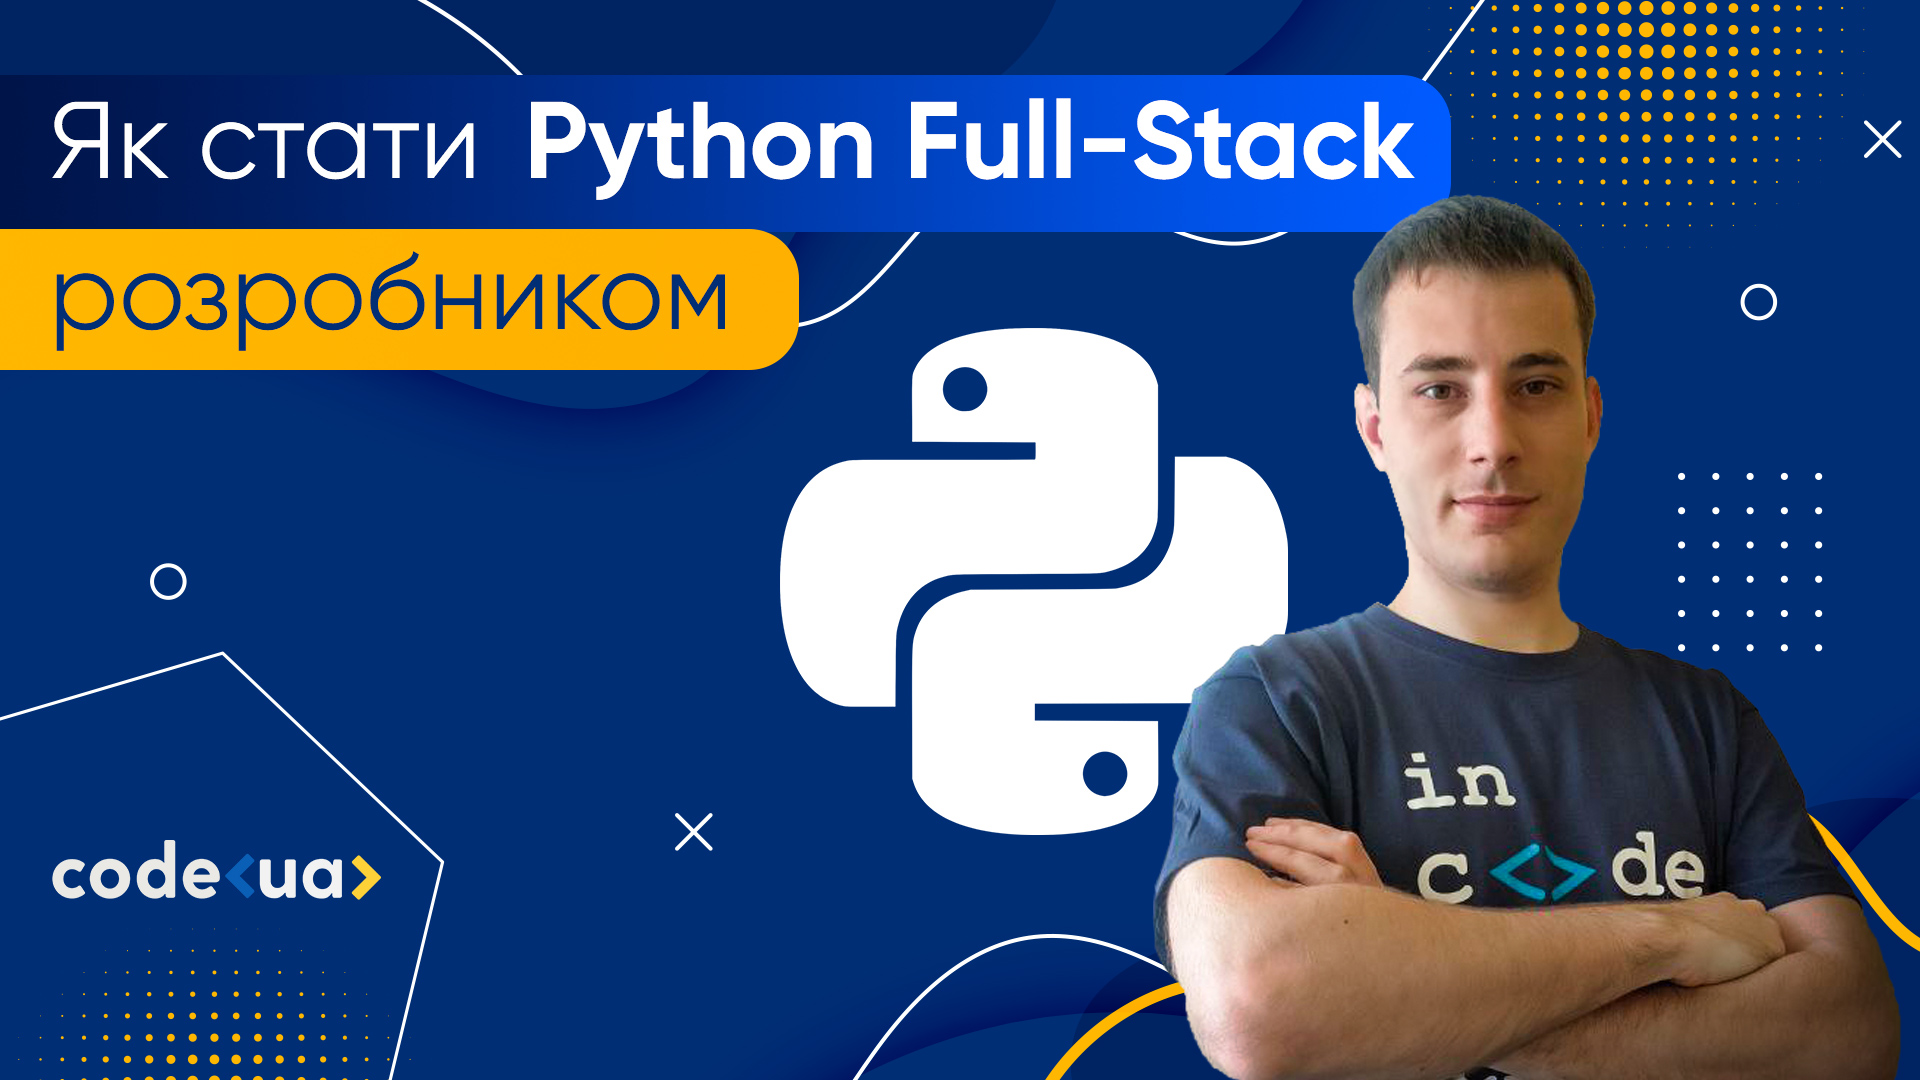 Як стати Full Stack Python розробником